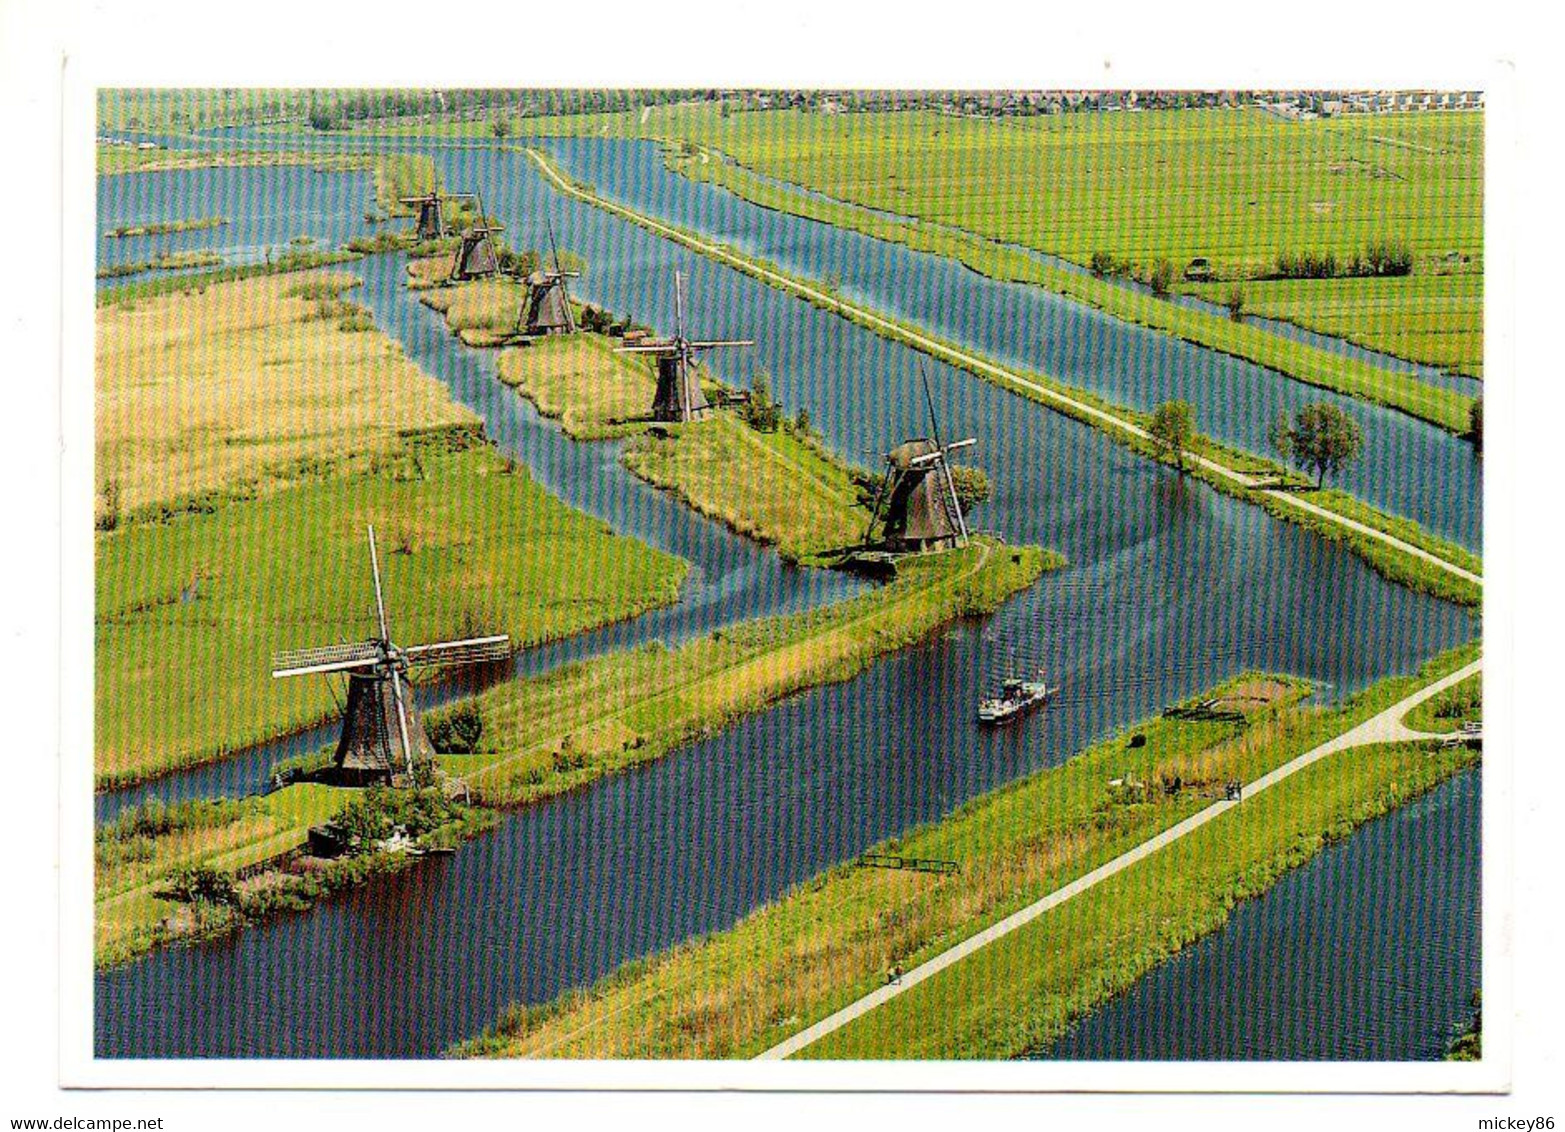 1999--Vue Aérienne D'un Paysage De Moulins à Vent Aux Pays-Bas ....timbre...cachet.......à Saisir - Windmills